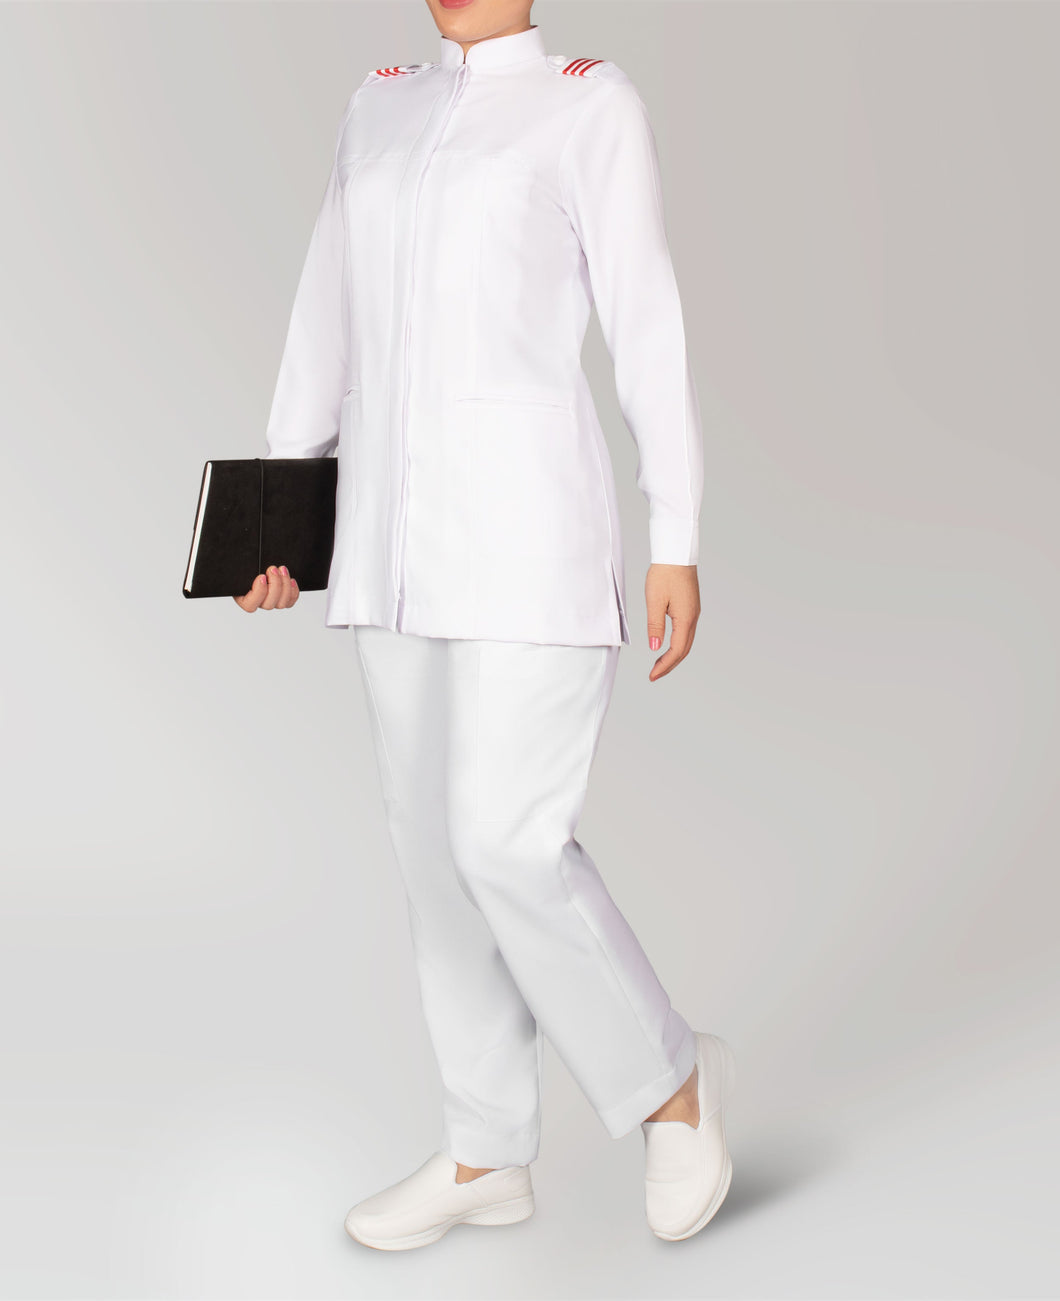 Women Student Nurse Uniform in Minimatt